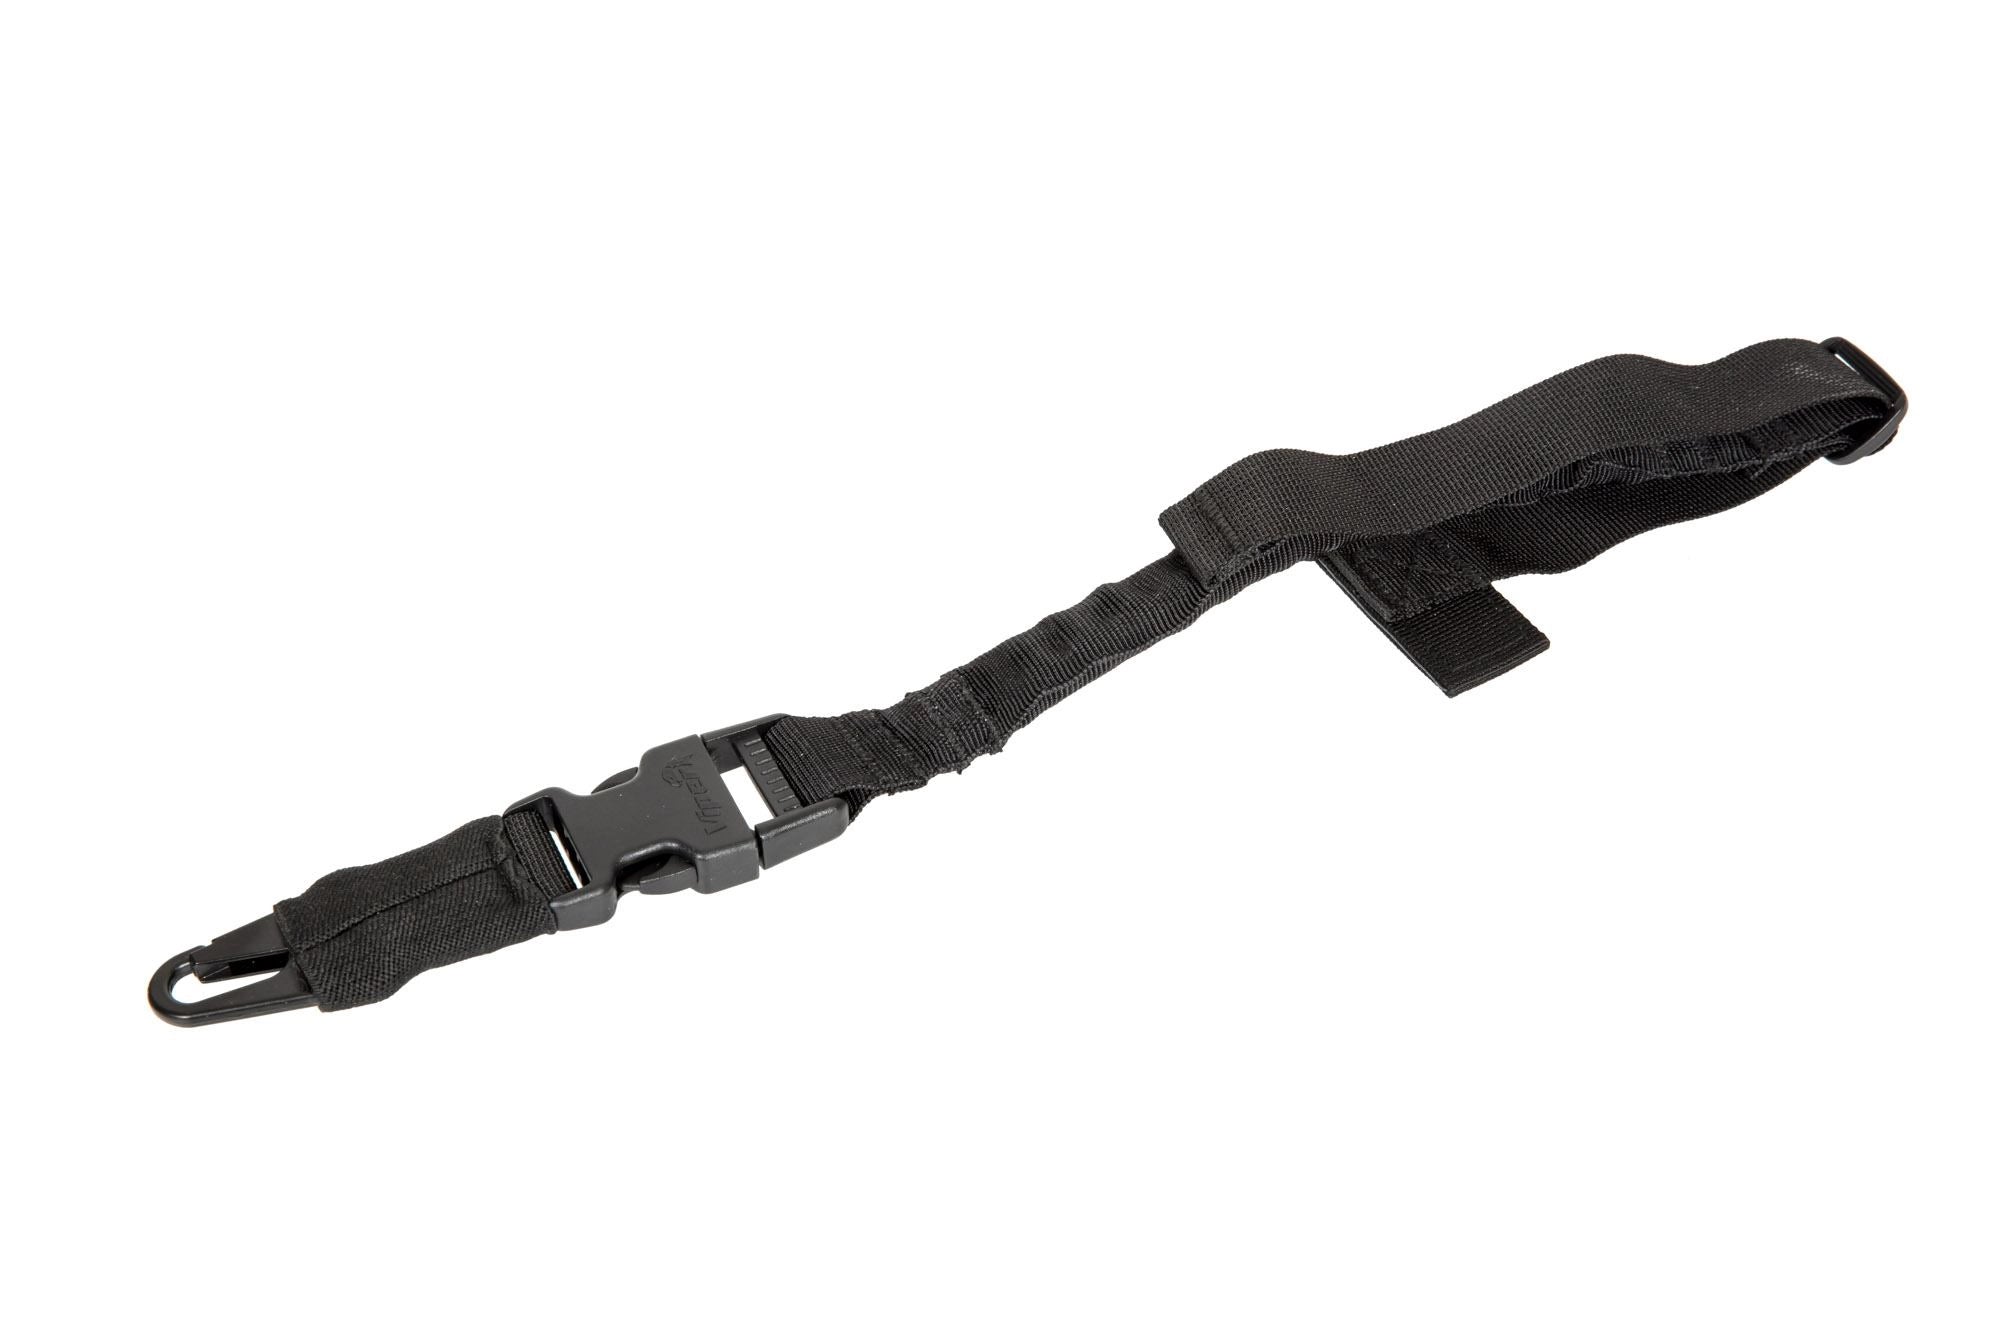 Modular MOLLE gun sling - black